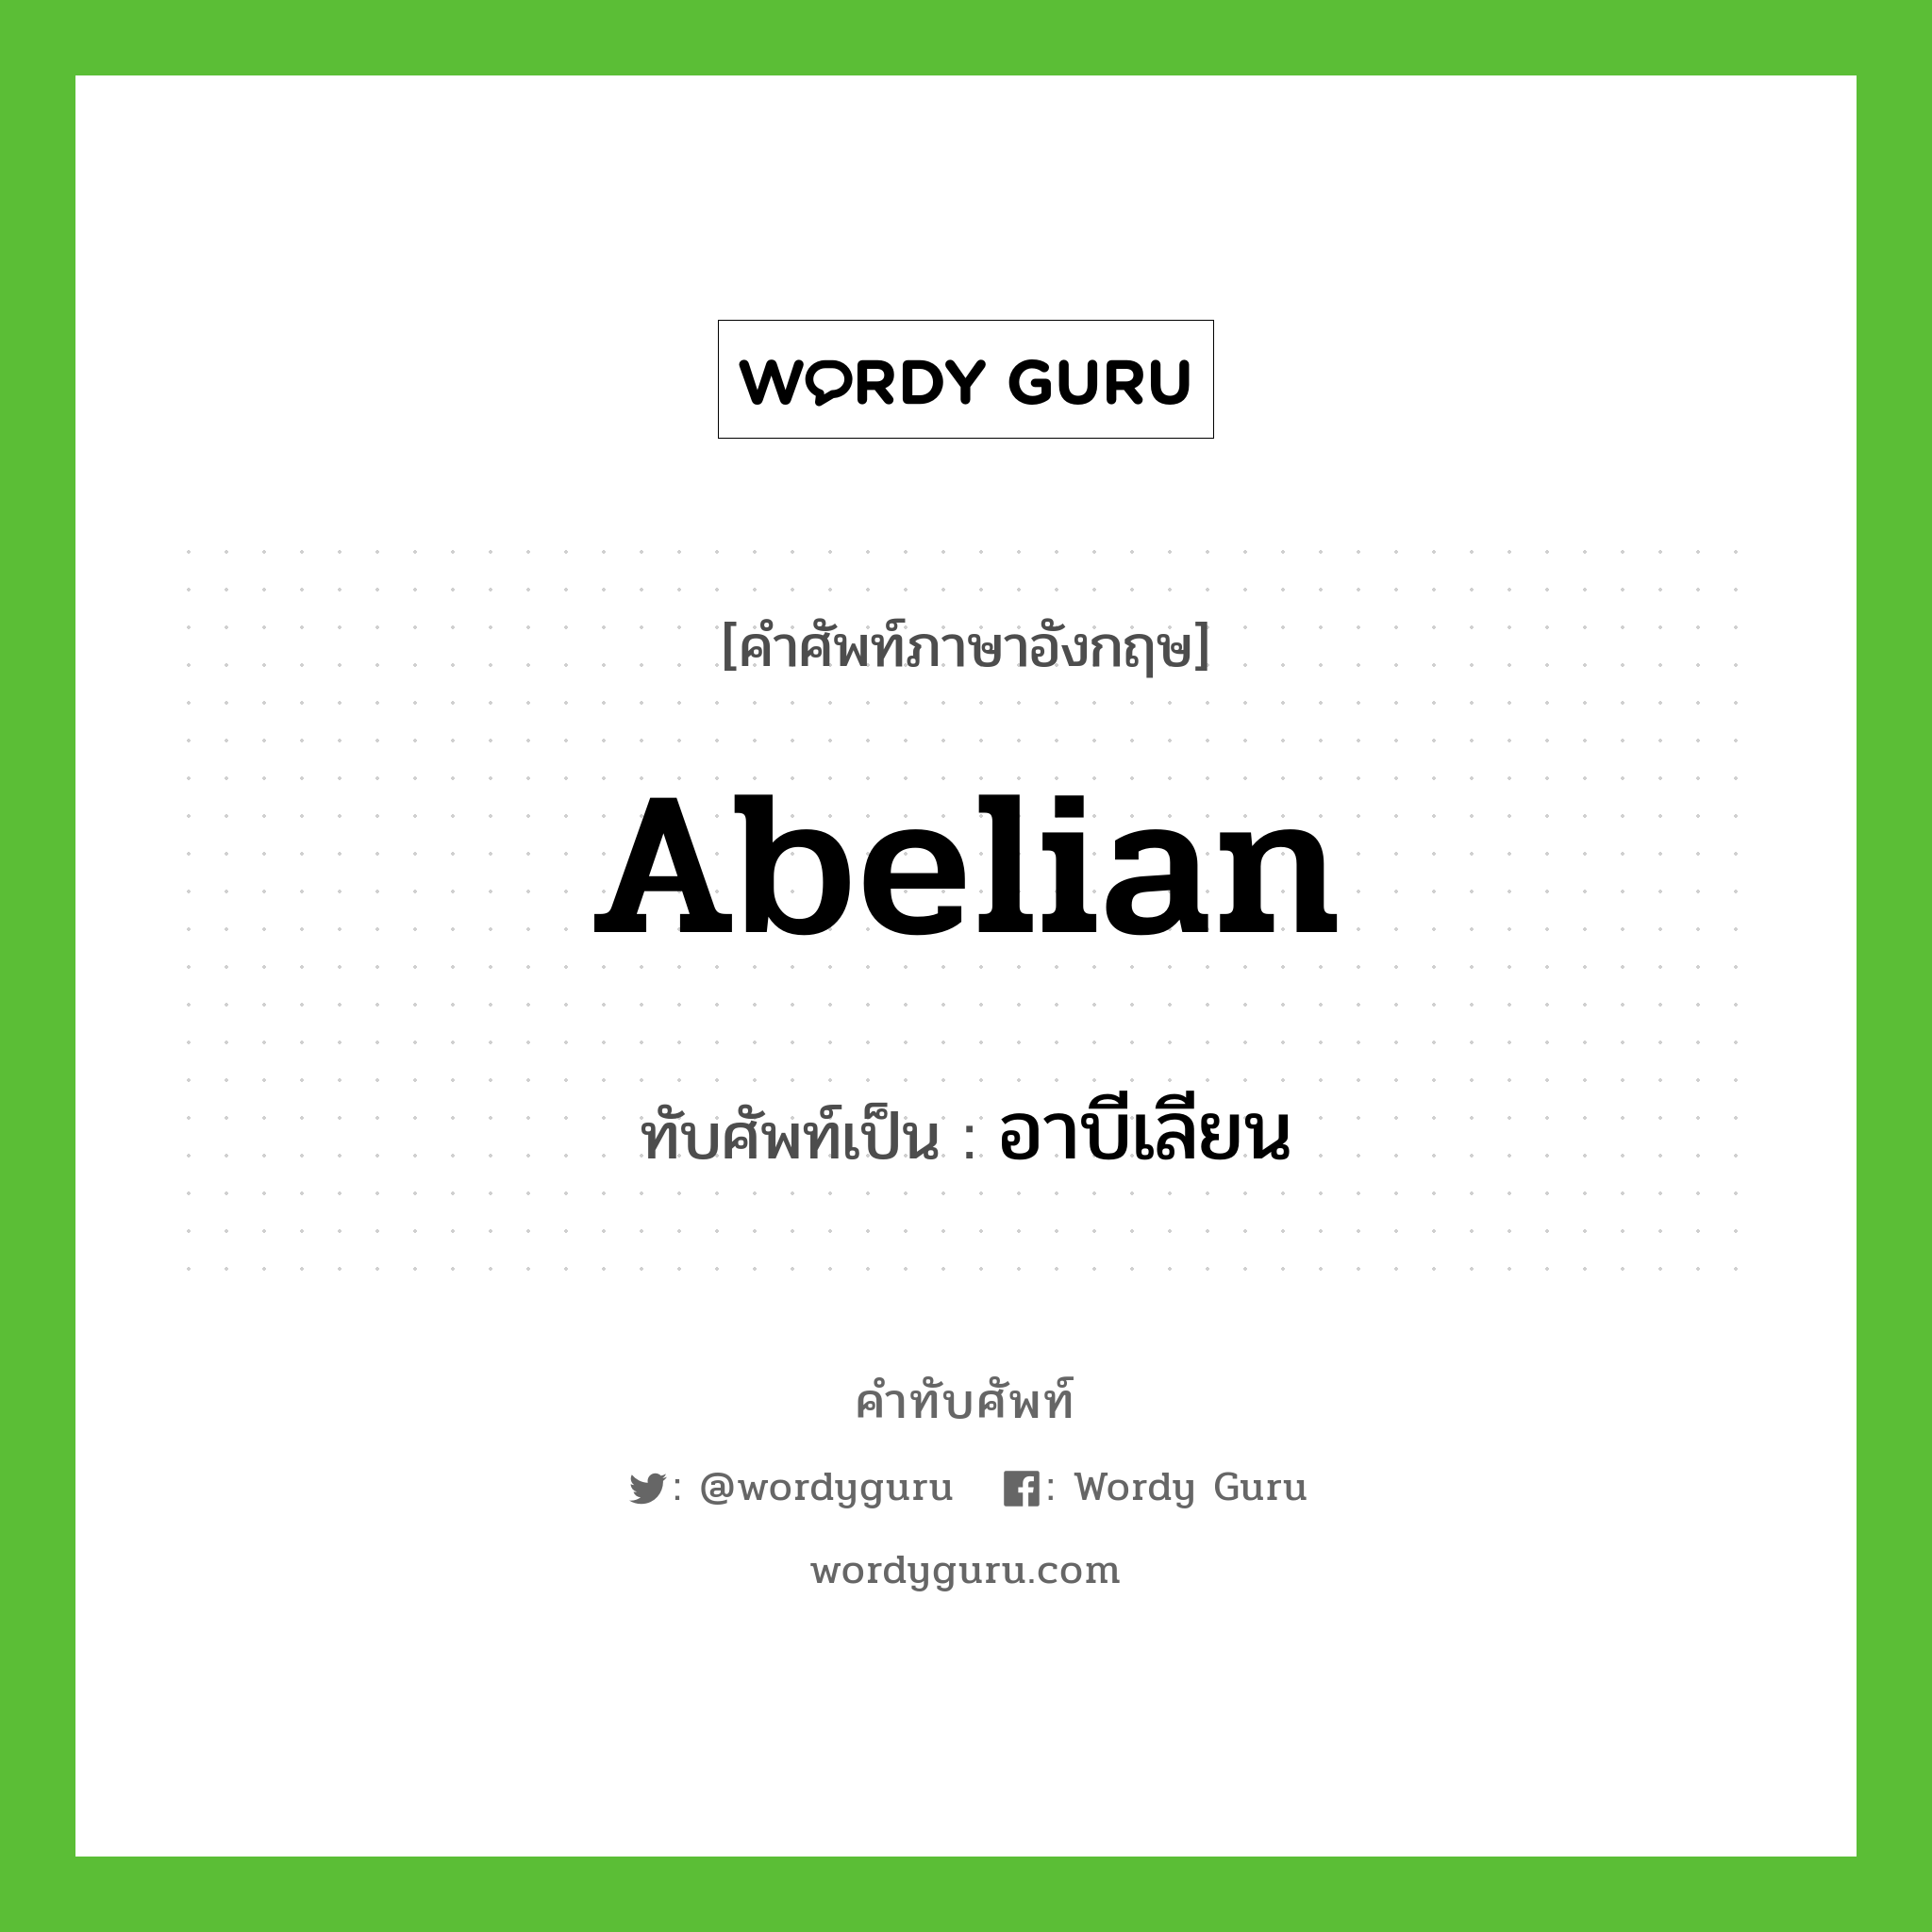 อาบีเลียน เขียนอย่างไร?, คำศัพท์ภาษาอังกฤษ อาบีเลียน ทับศัพท์เป็น abelian